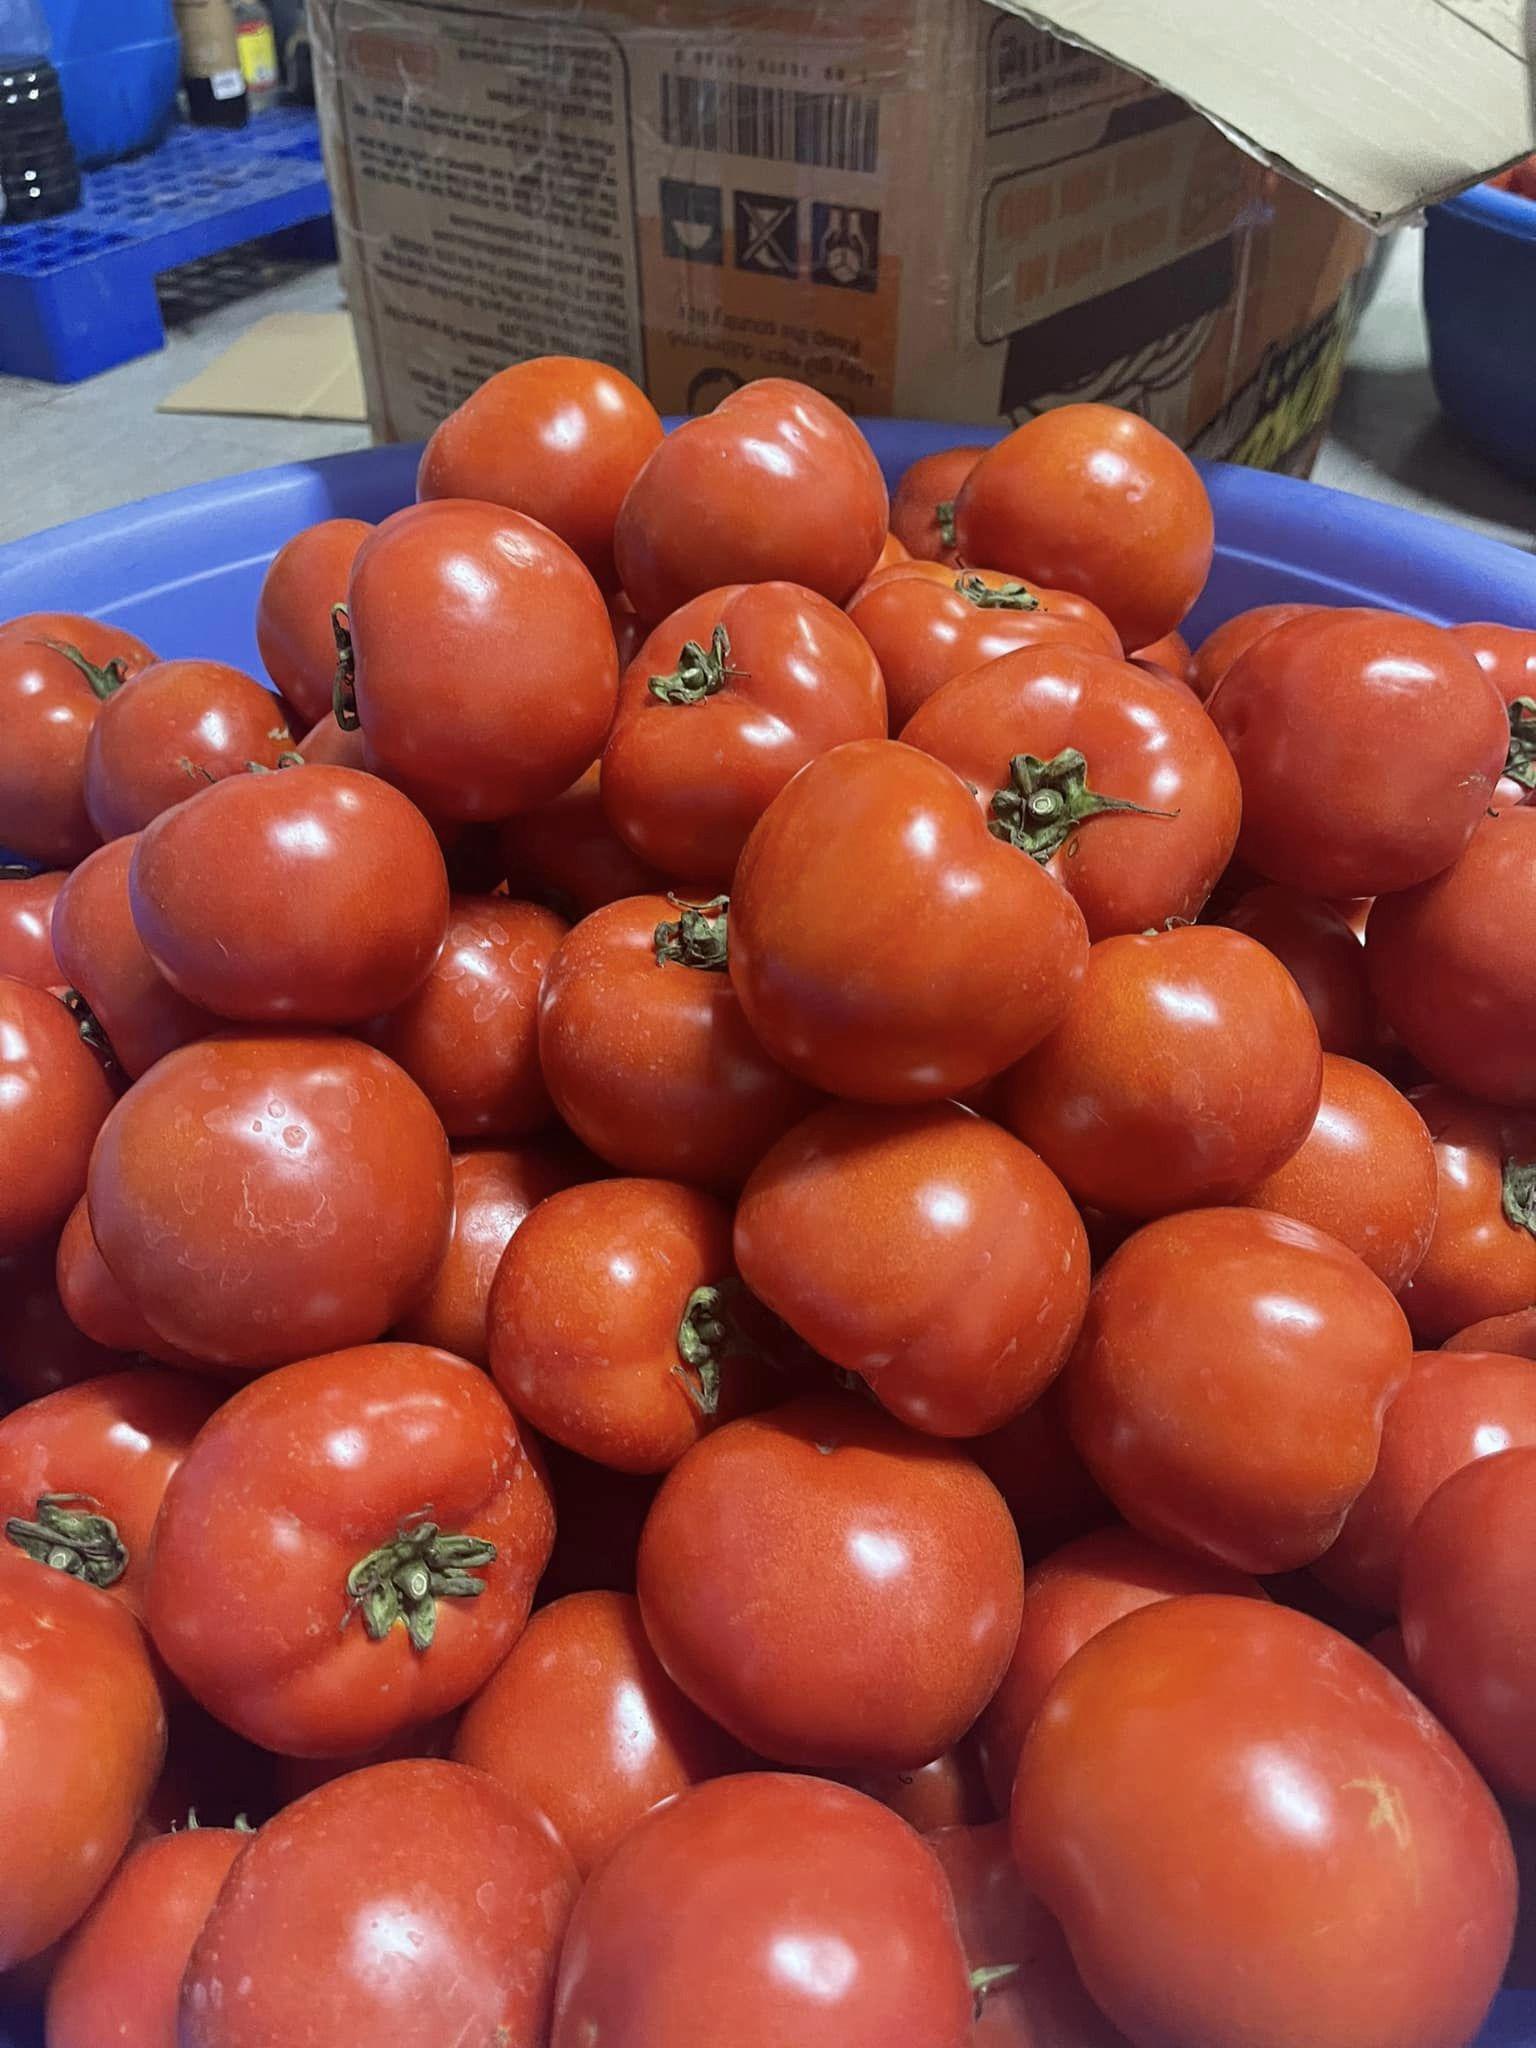 Cà chua hiện có giá bán rất rẻ, chỉ vài nghìn đồng/kg.